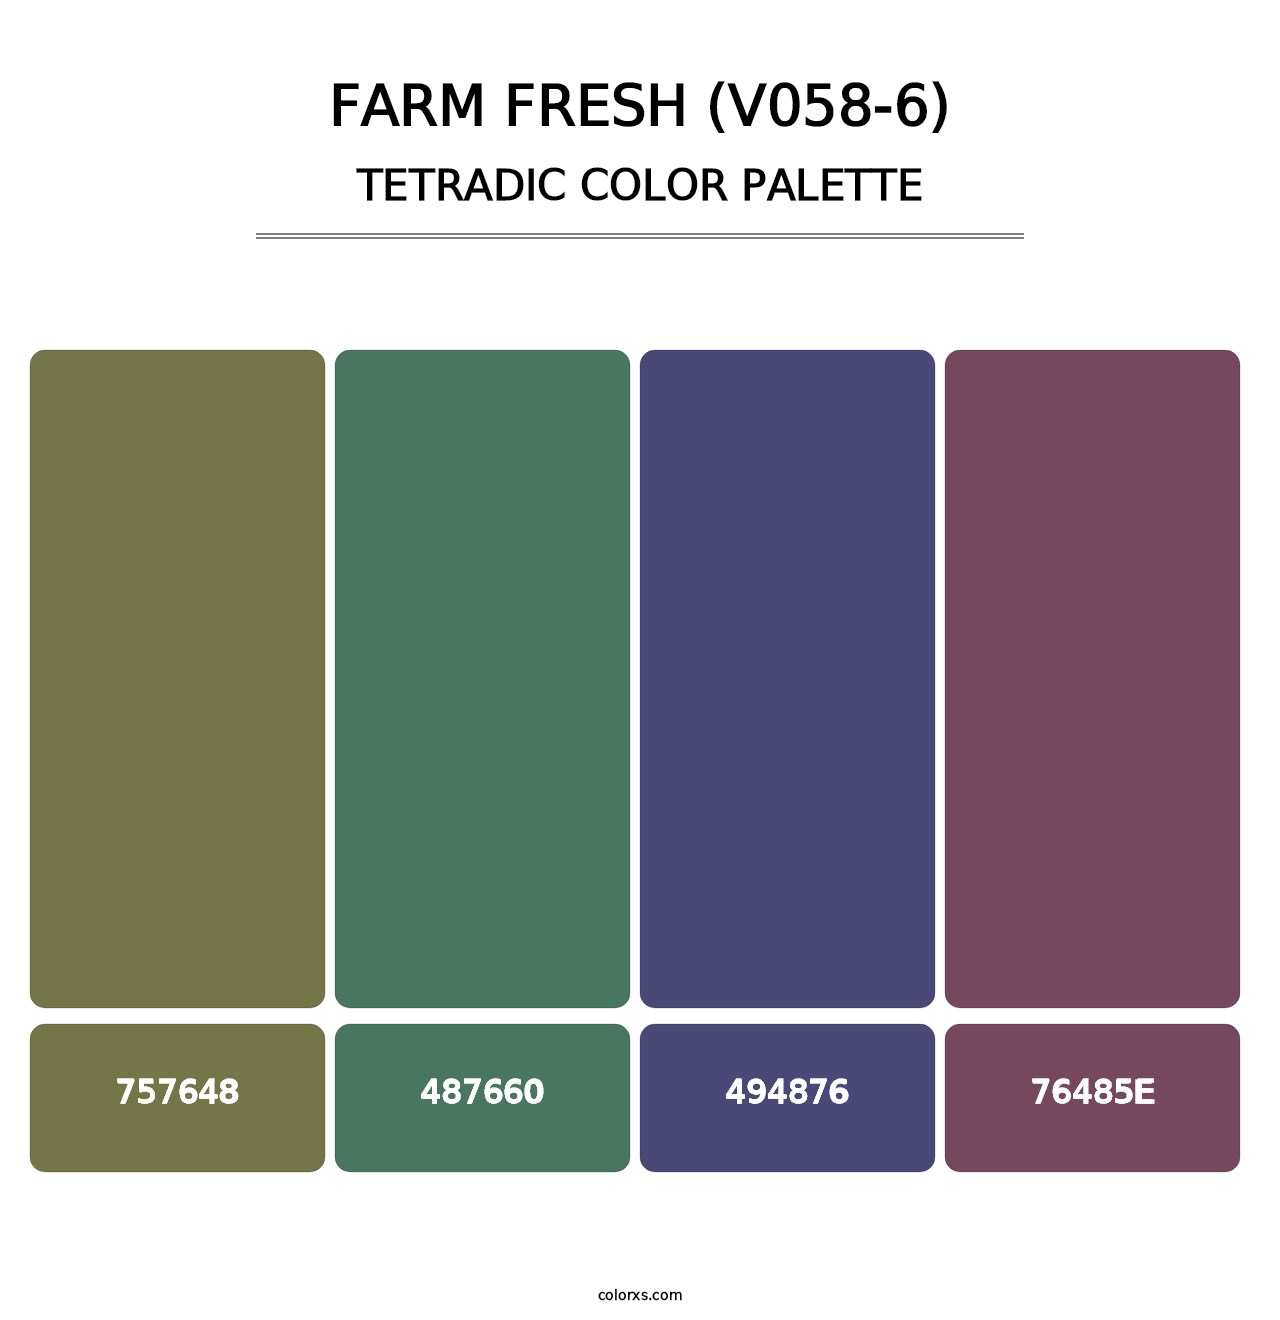 Farm Fresh (V058-6) - Tetradic Color Palette